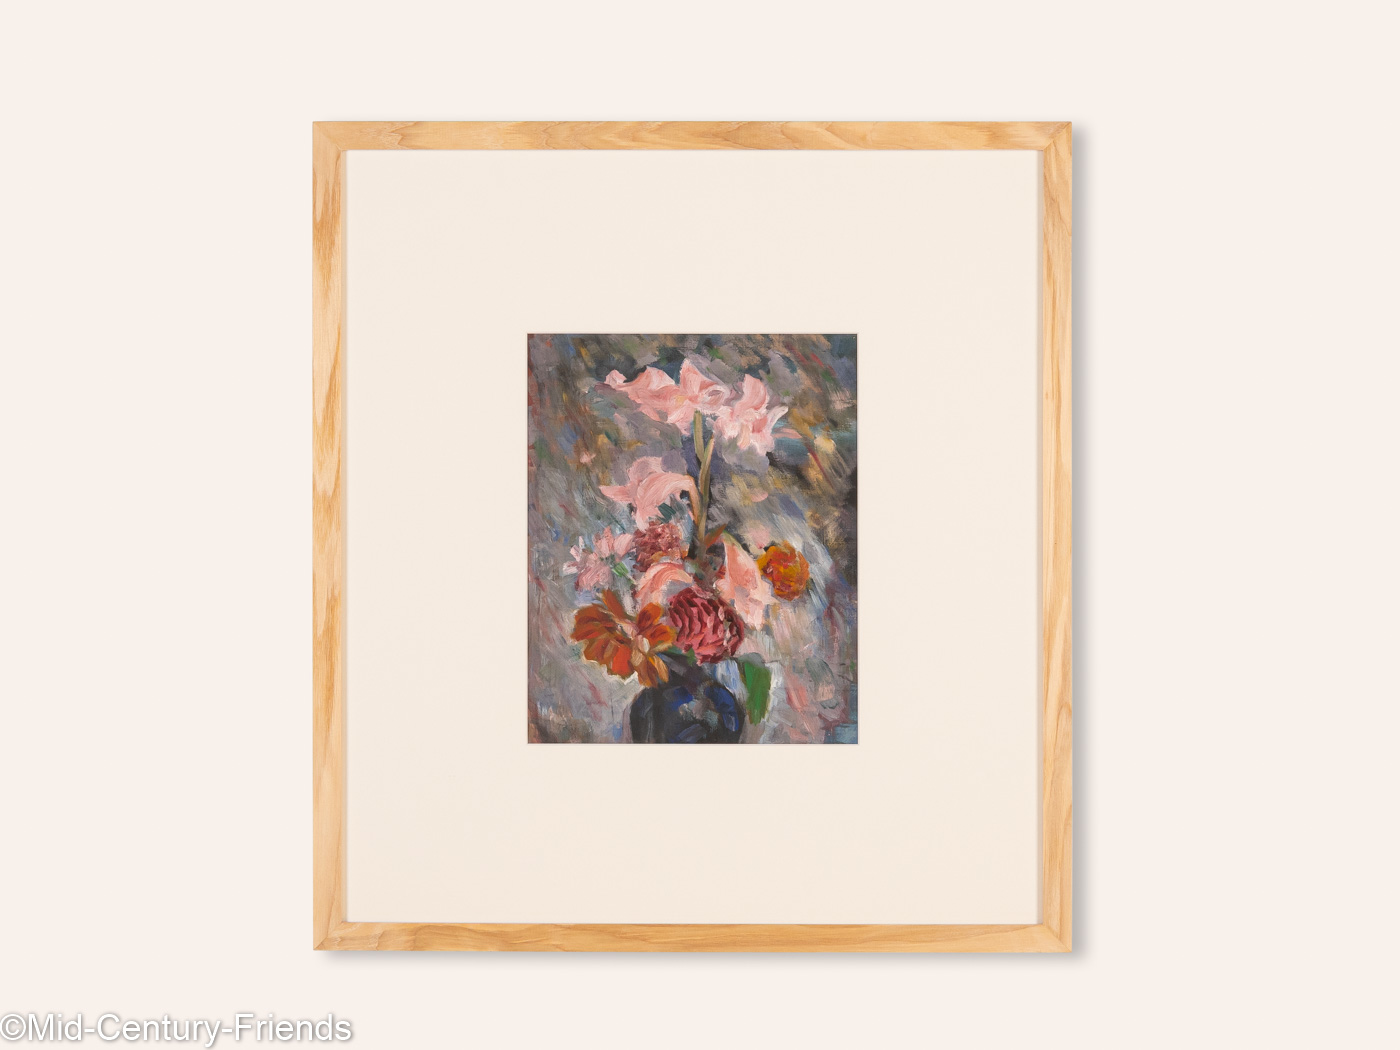 Blumen in Pastell, Acryl auf Karton, 53 x 58 cm